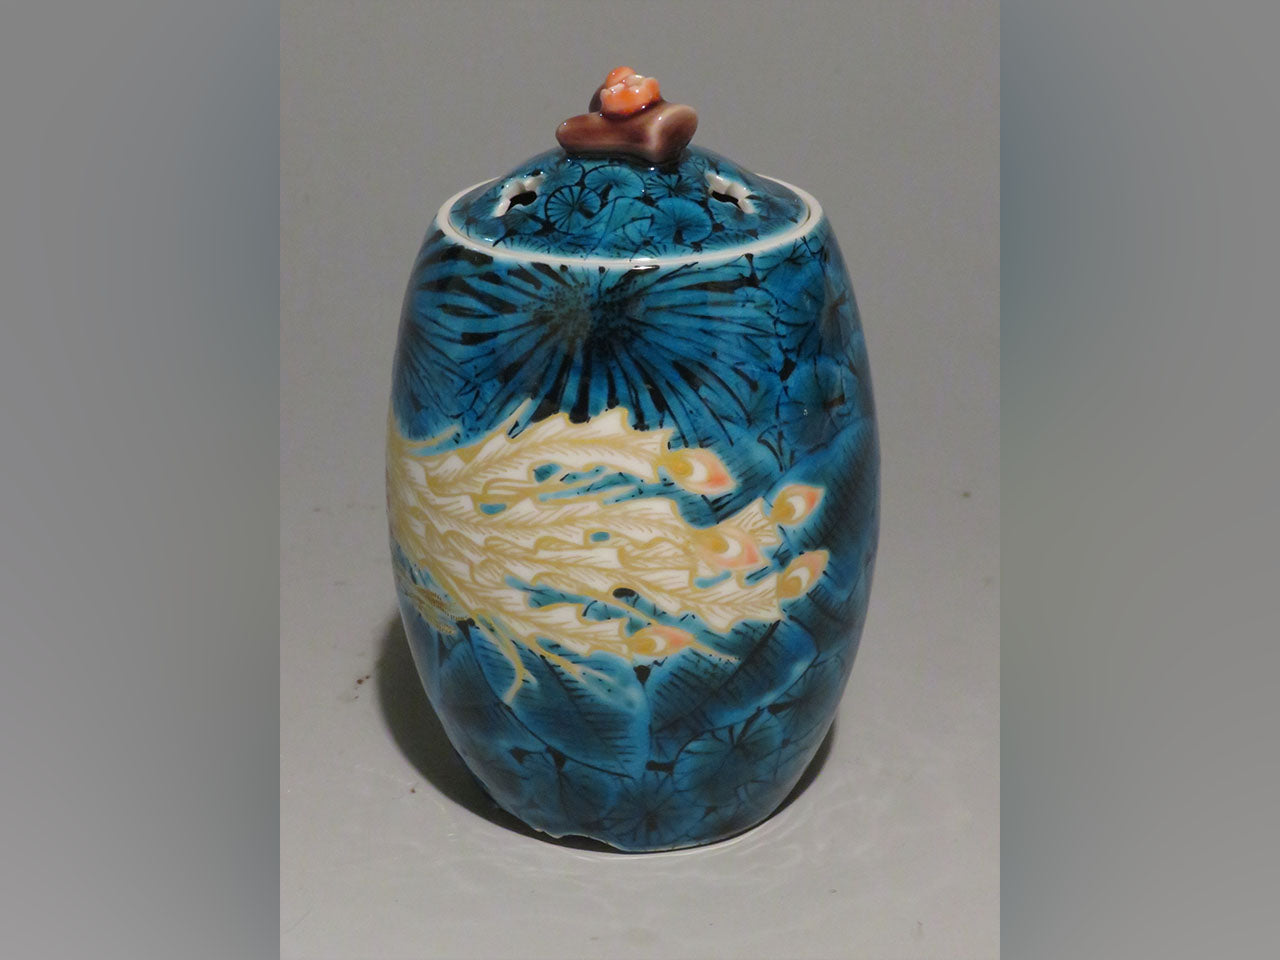 Ornament, Incense burner, Blue type, Gold painting, Phoenix, Hand-drawn - Yoshihiro Yamaguchi, Kutani ware, Ceramics